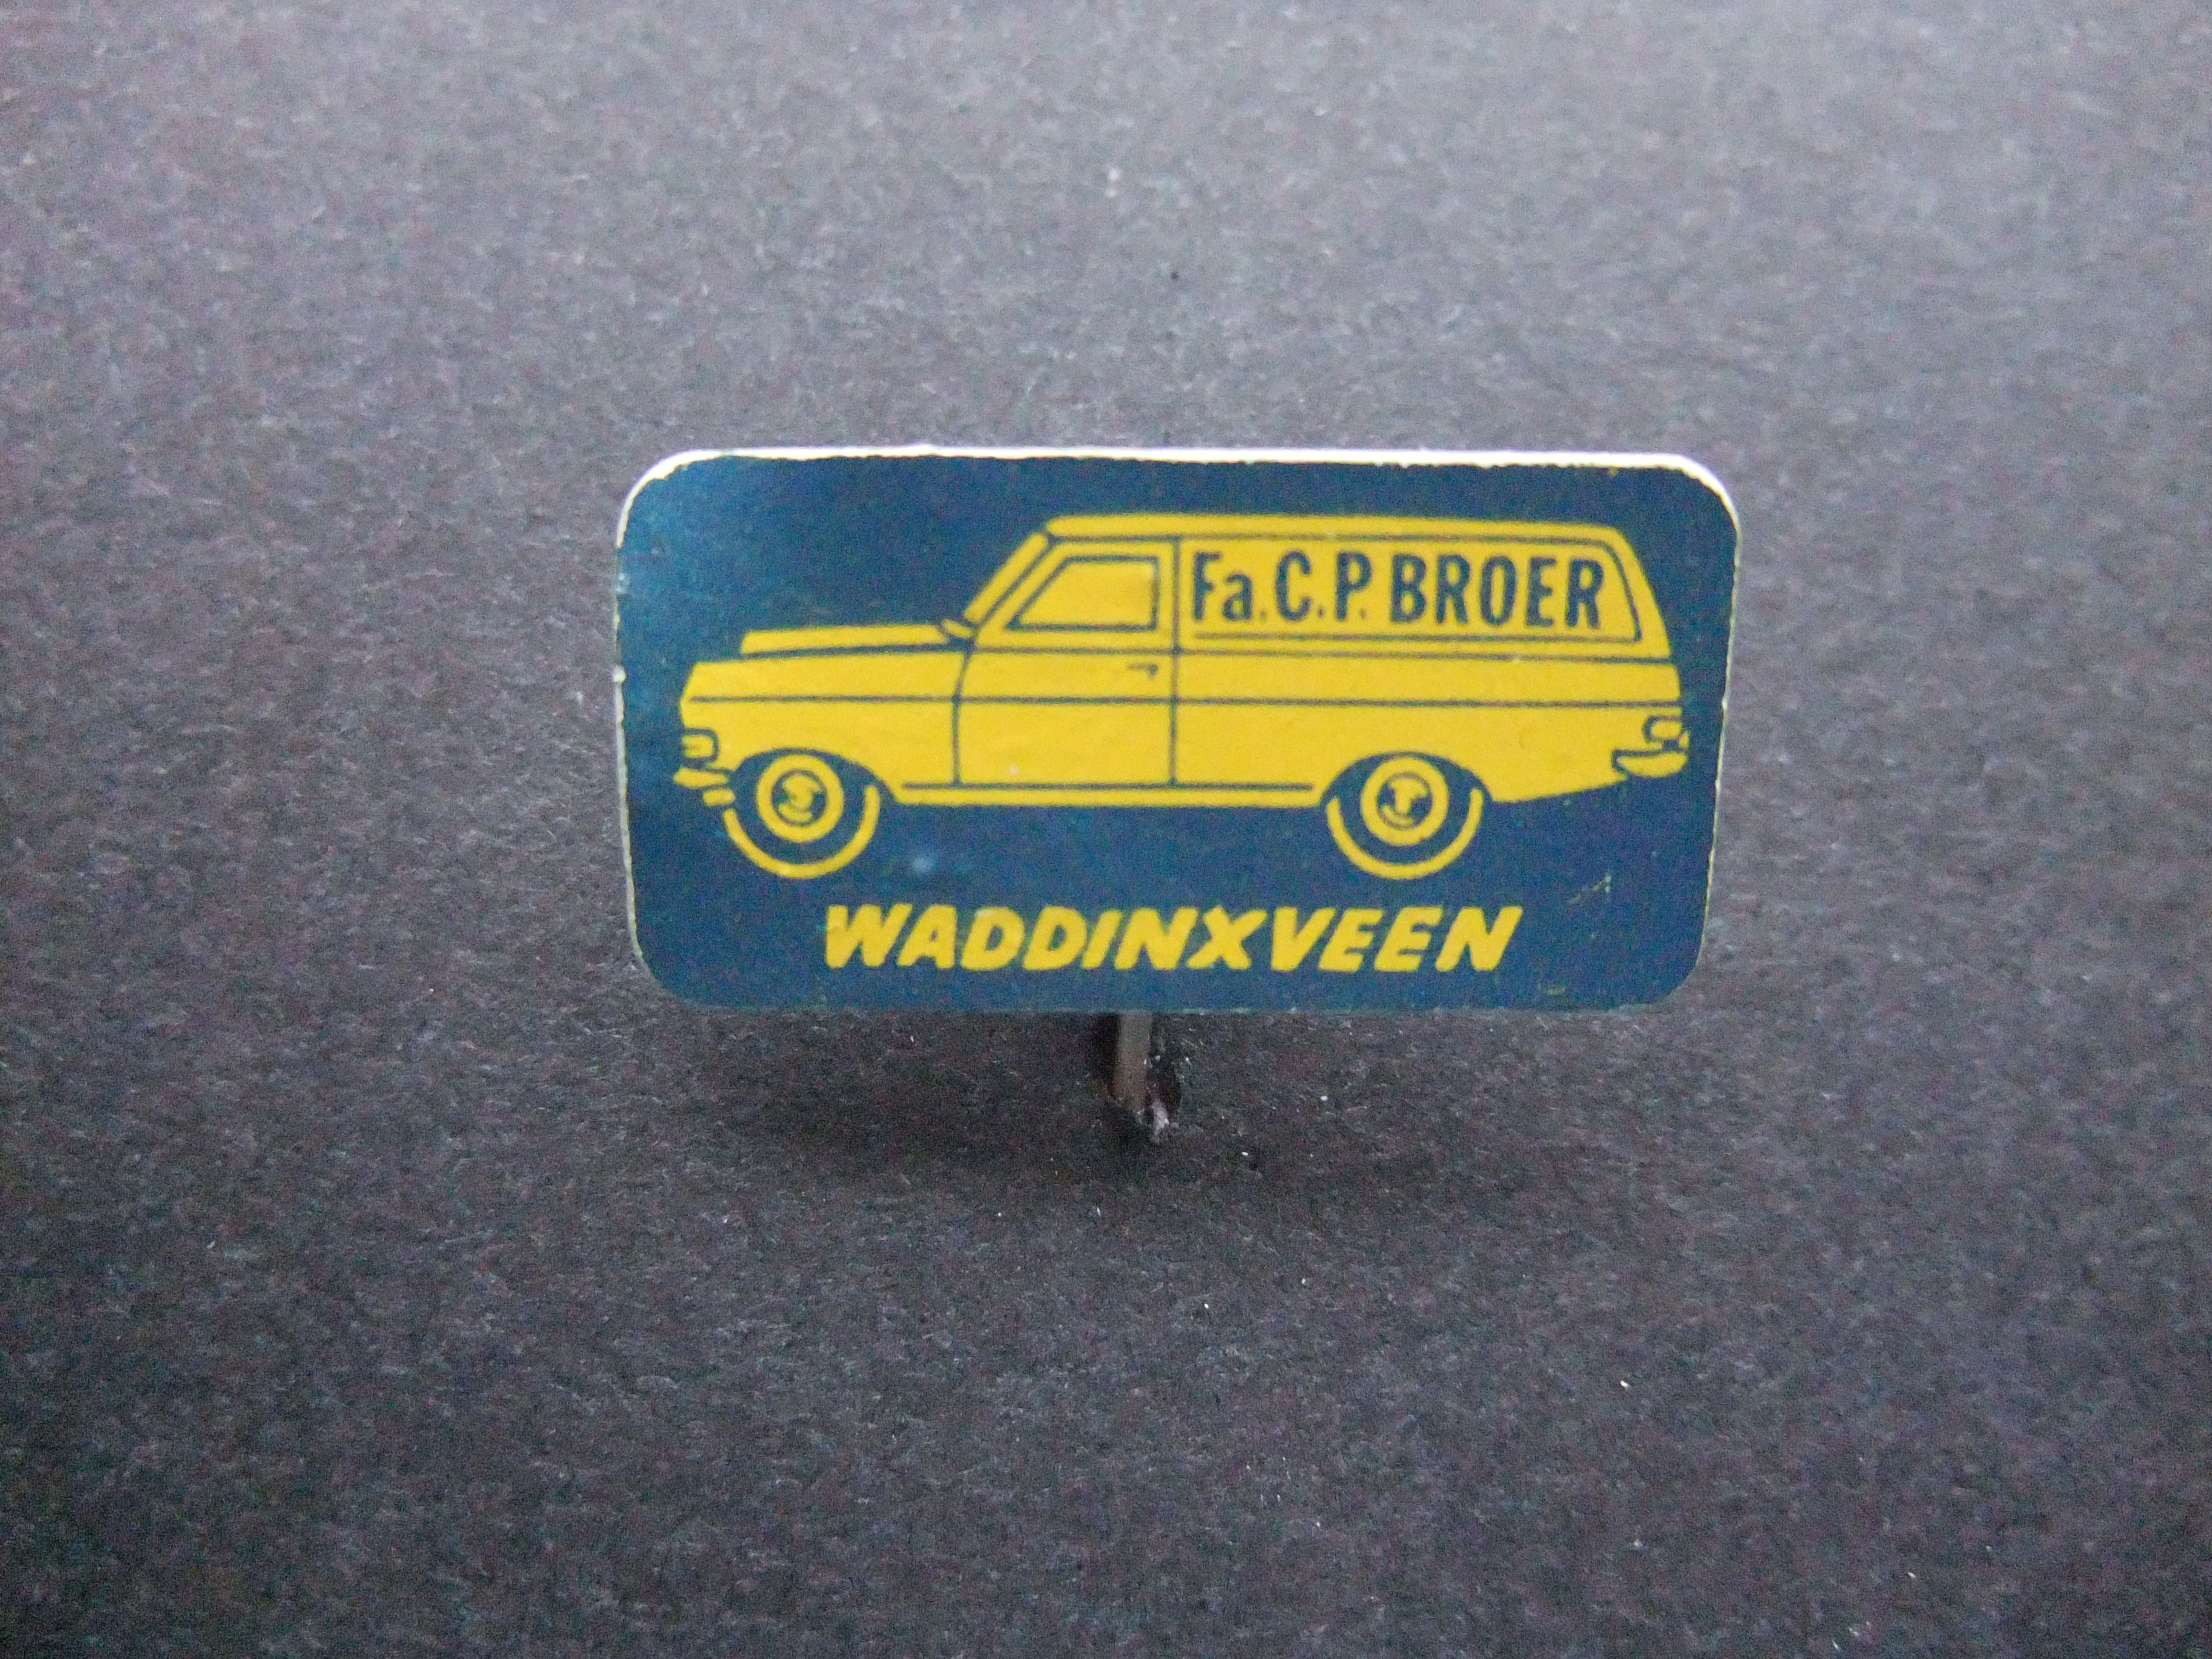 Fa.C.P. Broer Bakkerijgrondstoffen Waddinxveen oude Chevrolet Waddinxveen